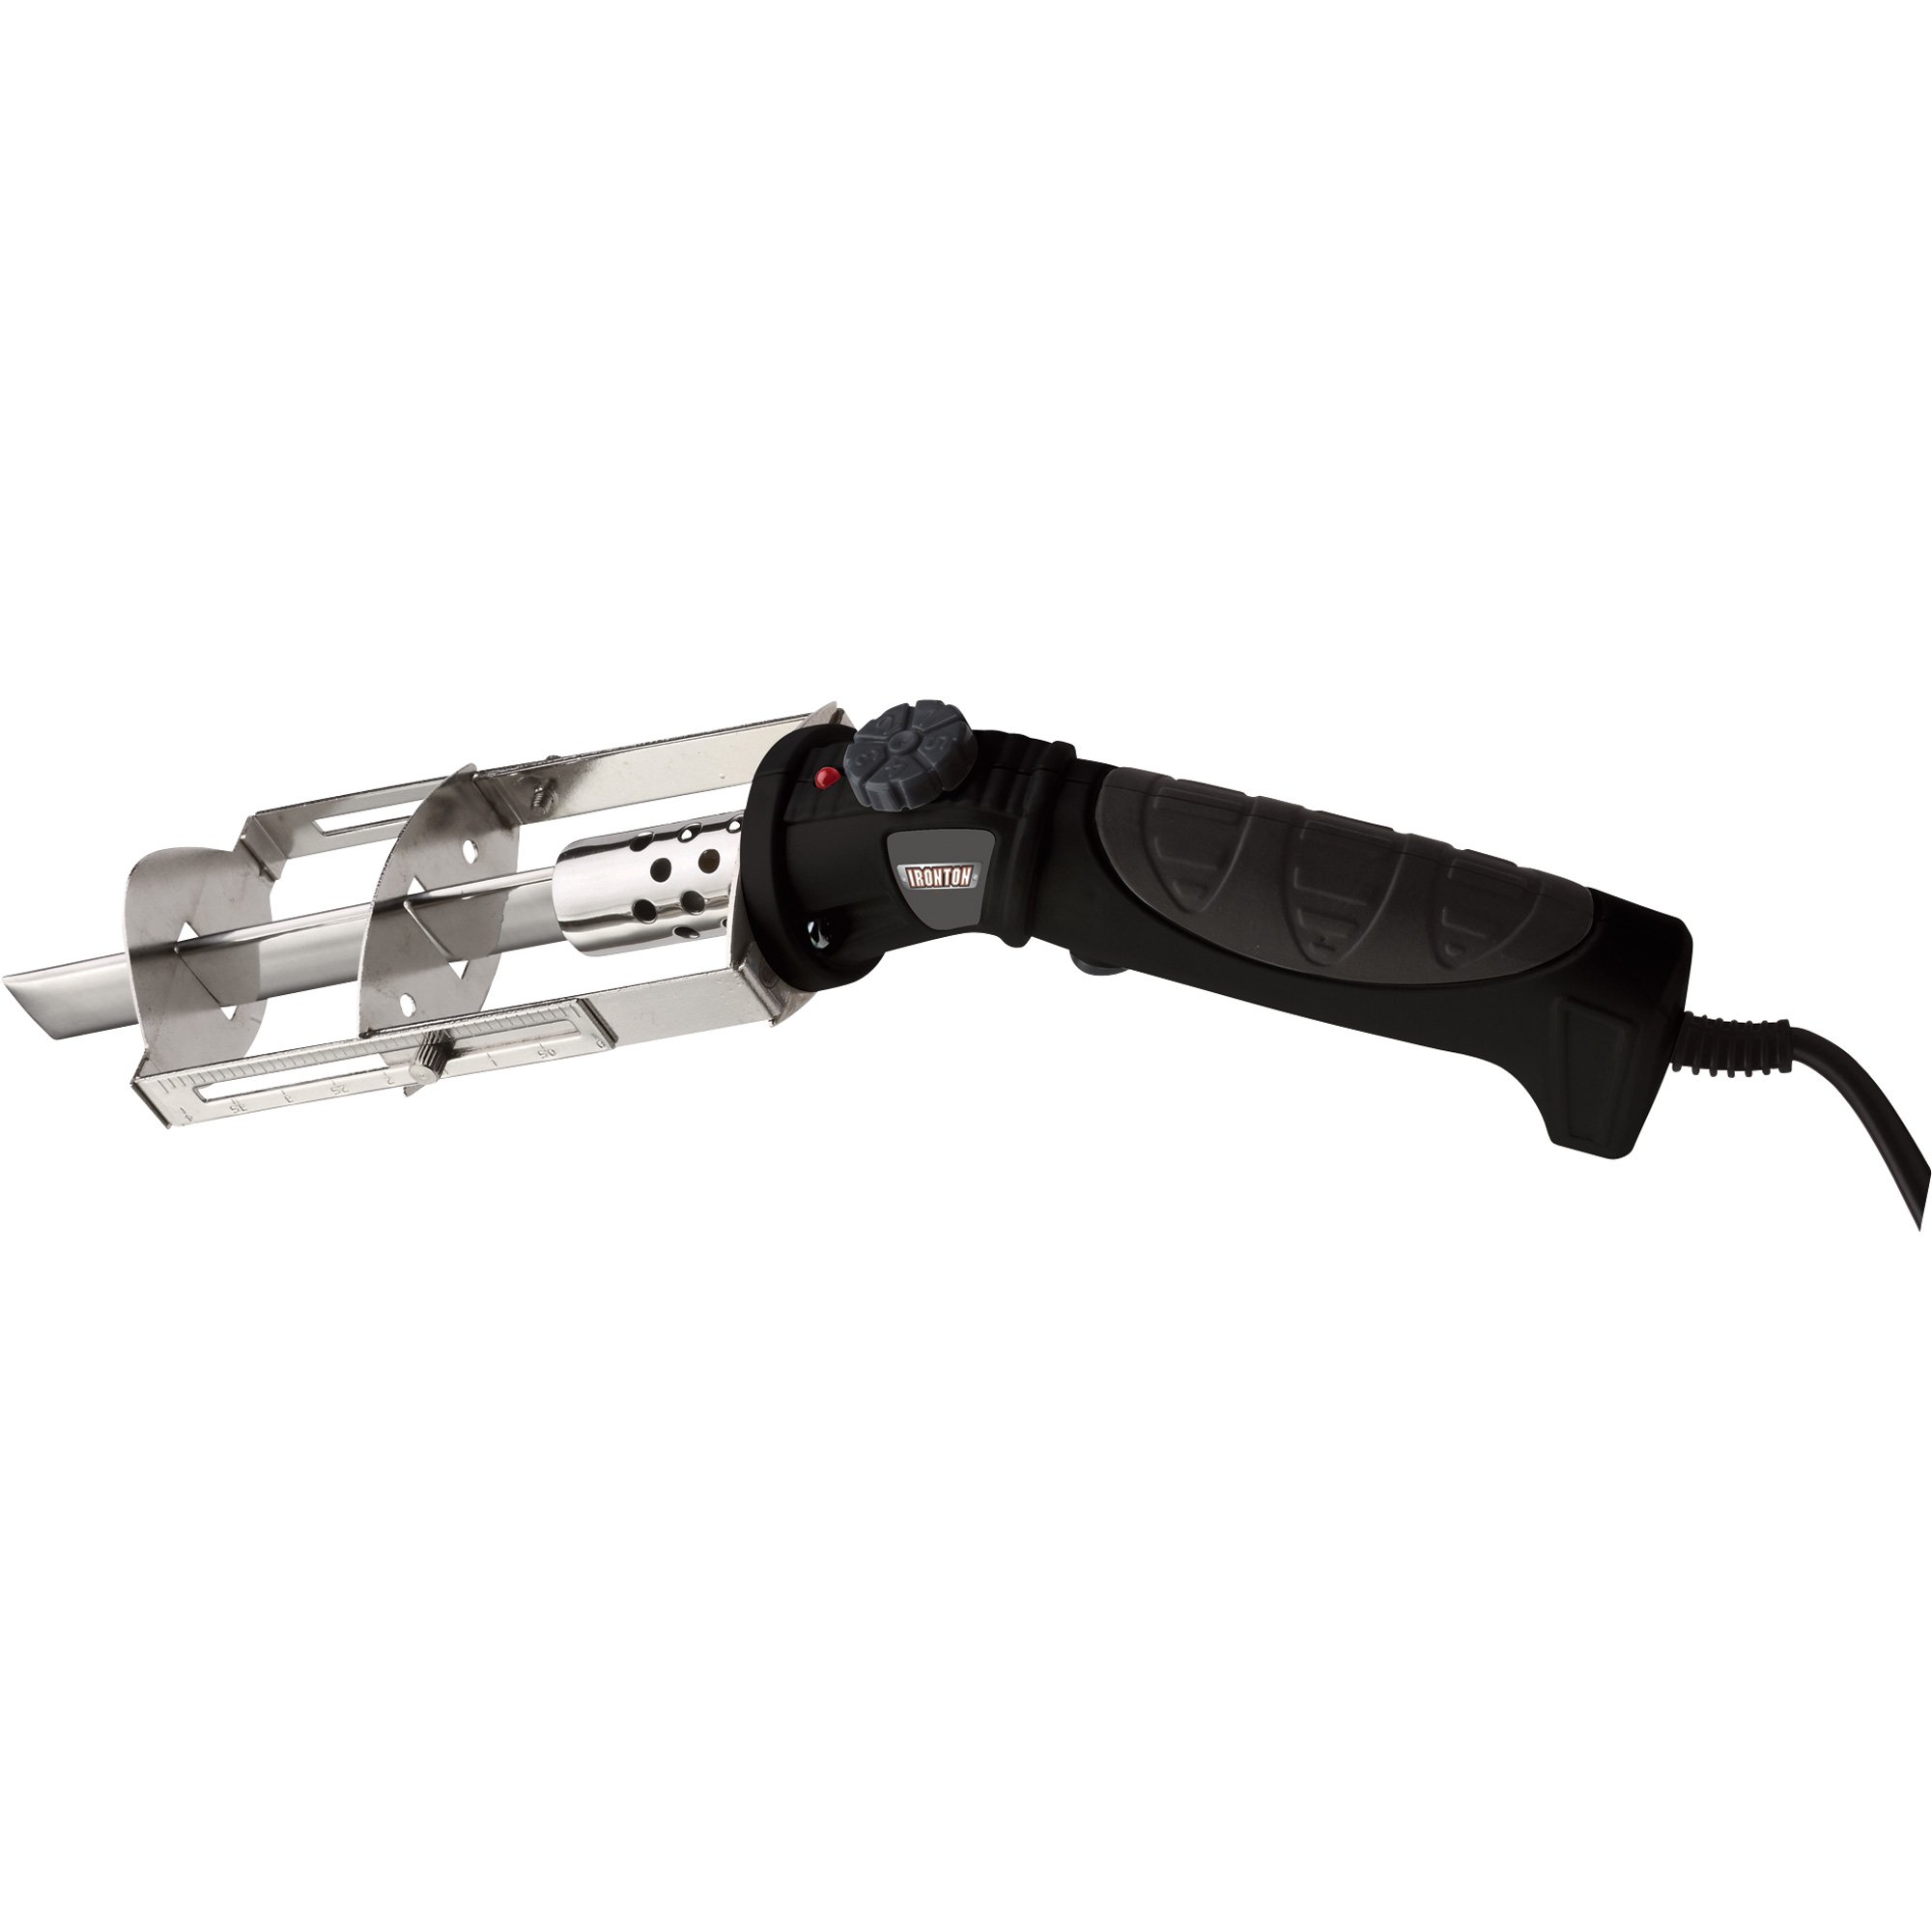 Ironton Electric Hot Knife Styrene Foam Cutter — 5.4in. Blade, 120V/150  Watt Power Input